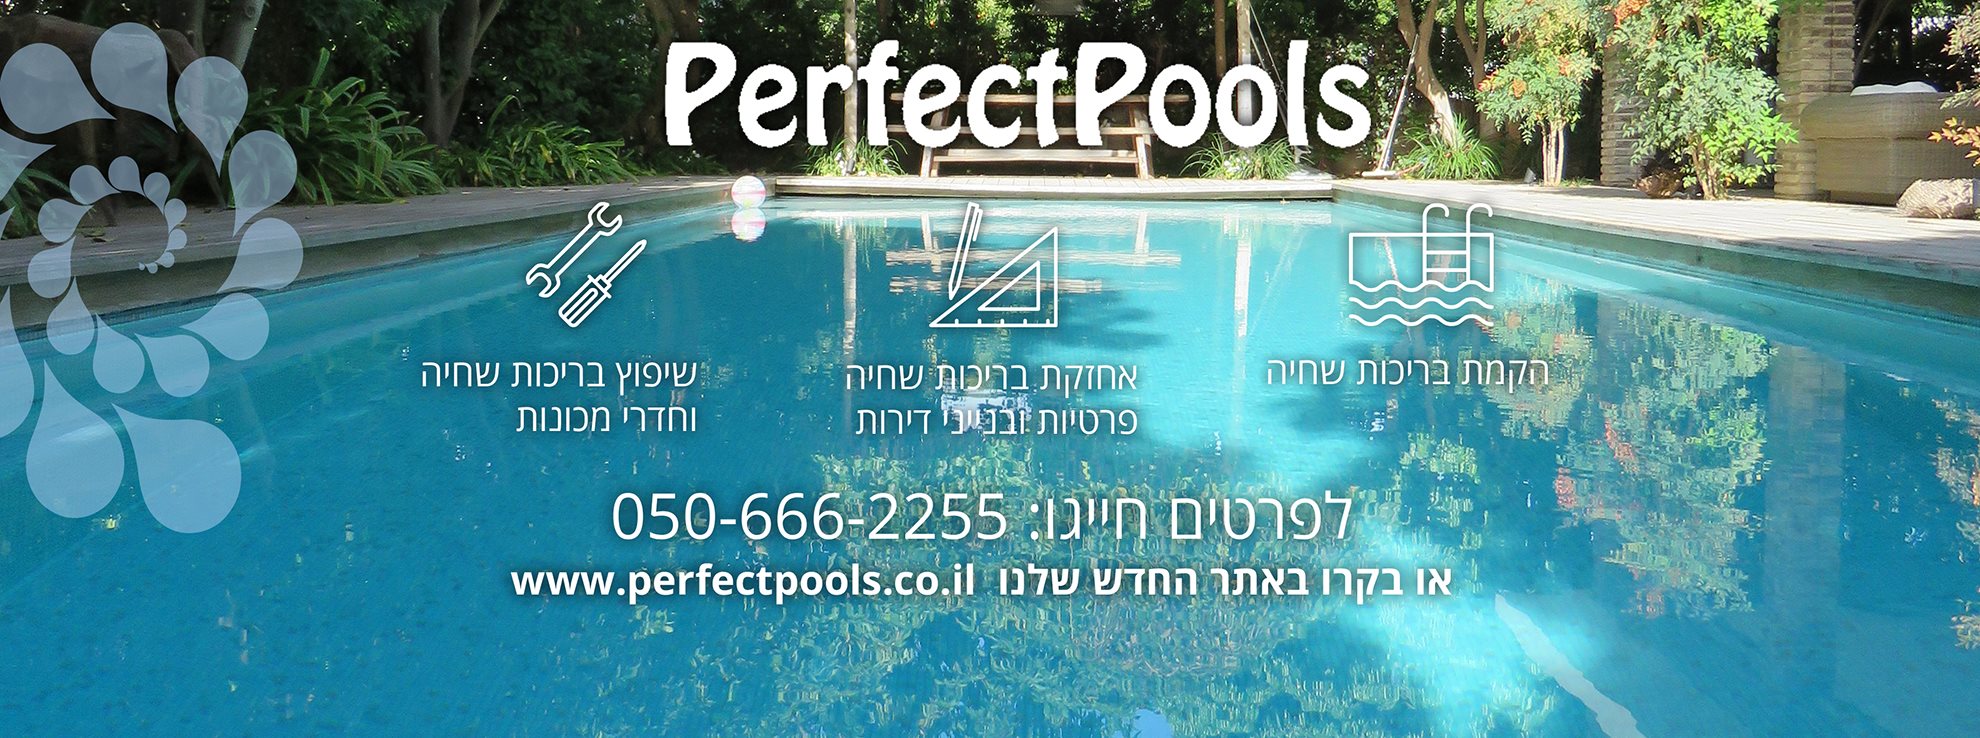 חברת Perfect Pools